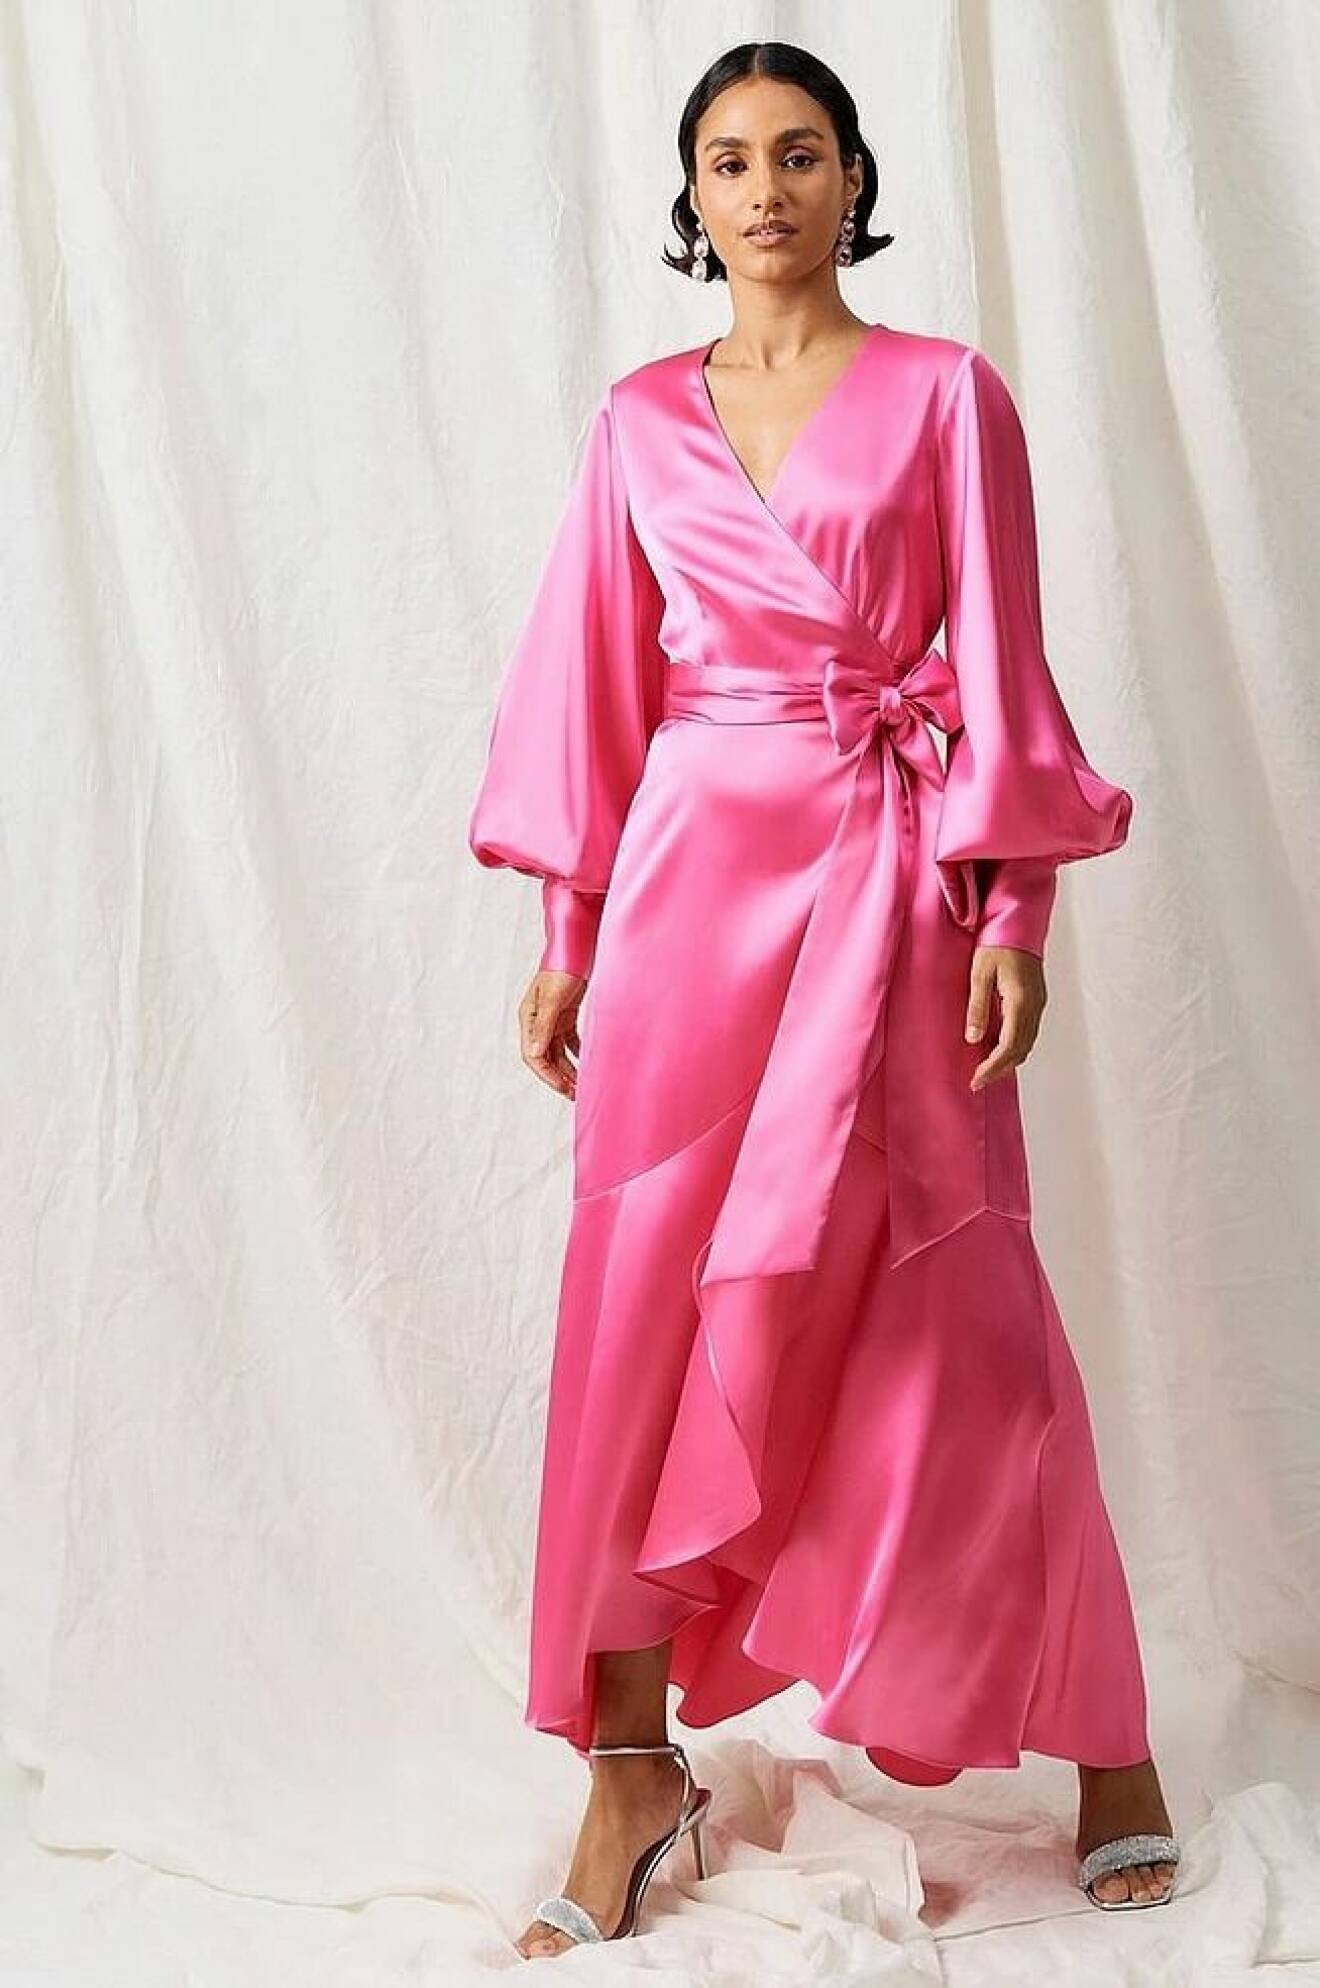 rosa festklänning i omlottmodell